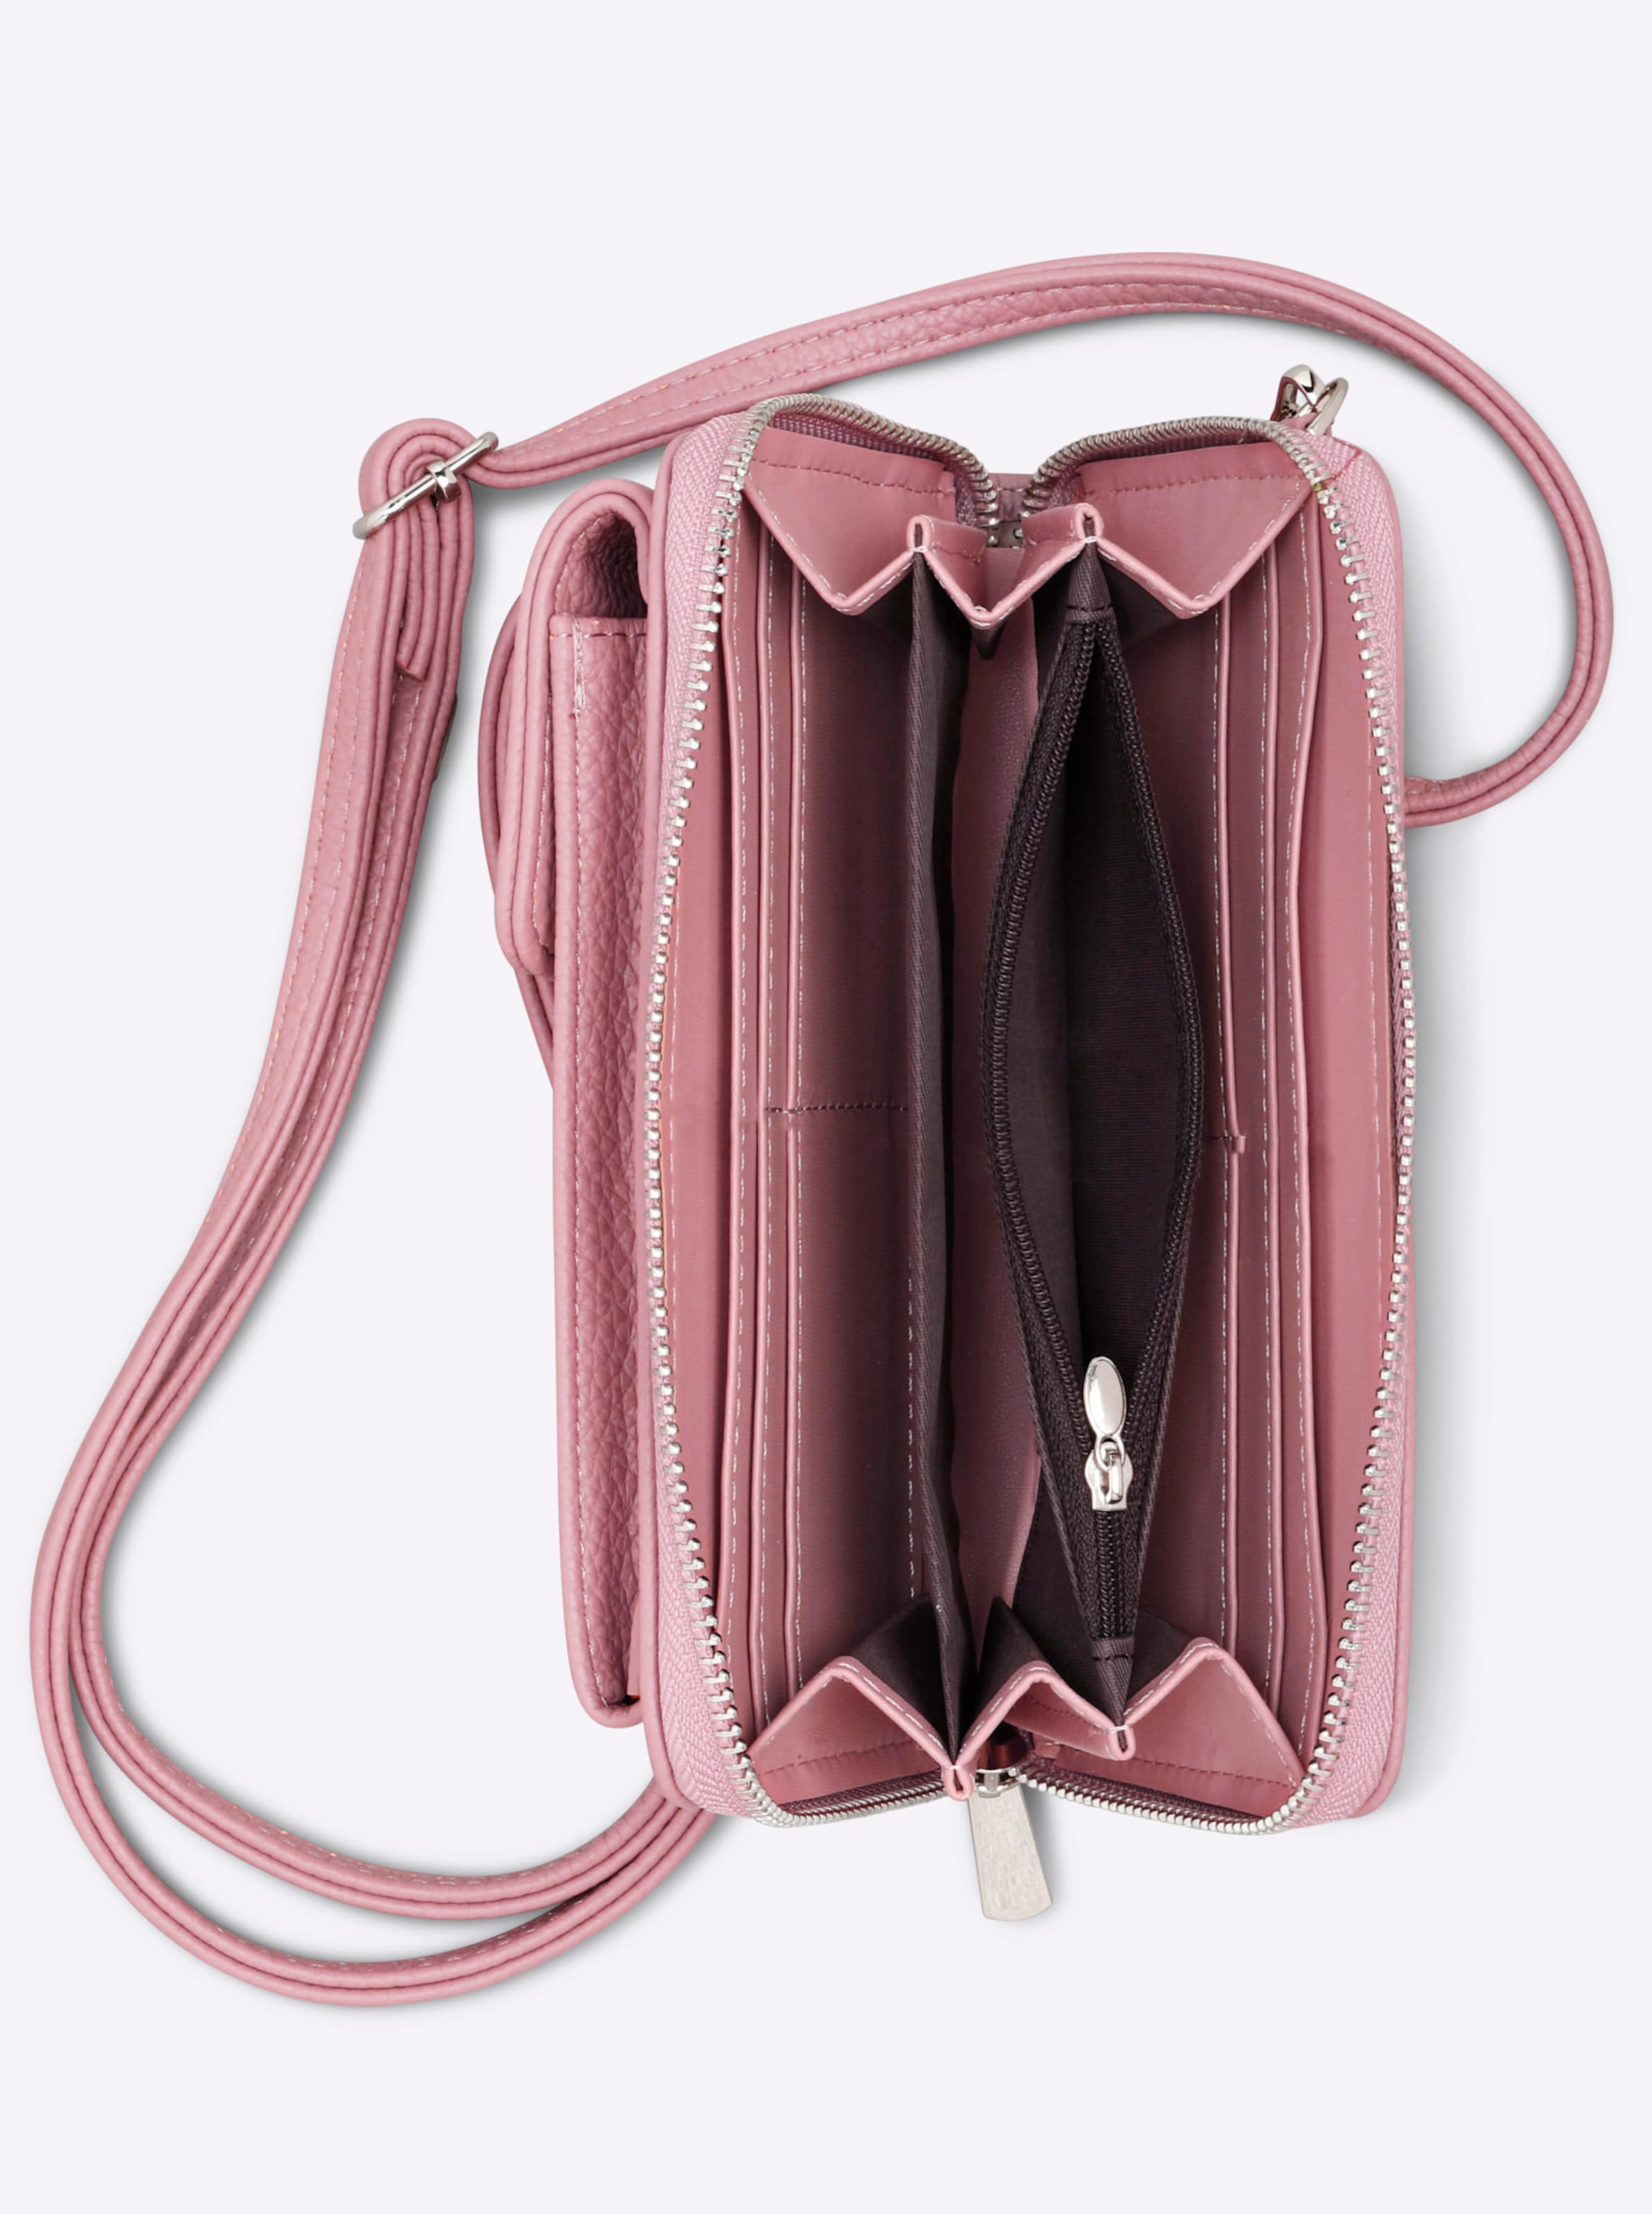 WE ARE günstig Kaufen-Handy-Tasche in rose von heine. Handy-Tasche in rose von heine <![CDATA[Handy-Tasche aus weichem Leder-Imitat. Ideal für Schlüssel, Handy und Portemonnaie. Vorne aufgesetztes Handyfach mit Druckknopfverschluss. Abnehmbarer und längenverstellbarer Trage